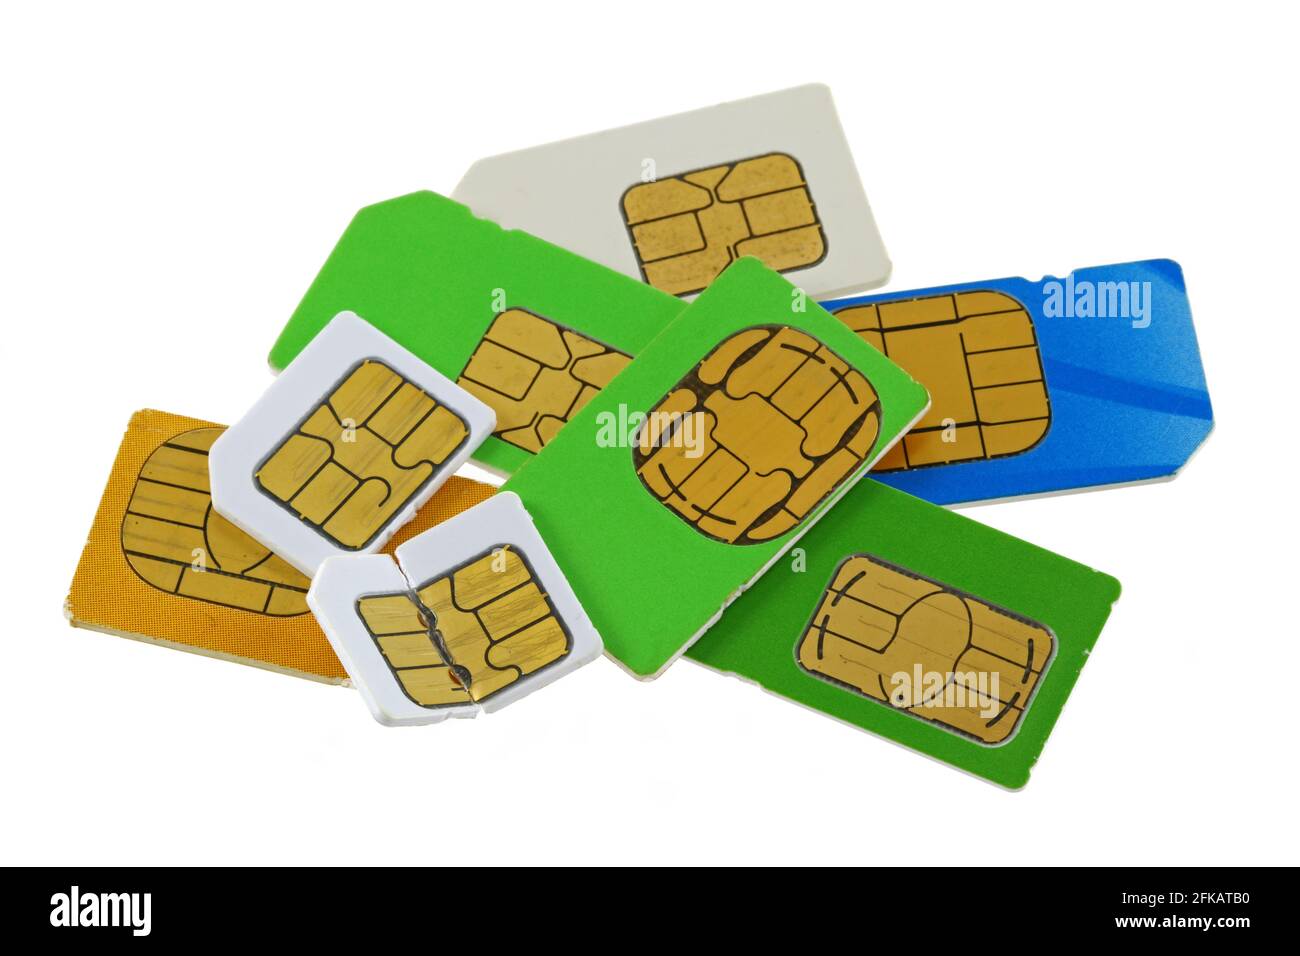 Groupe de cartes SIM anciennes et utilisées du module d'identité de l'abonné, dont une est pliée et cassée Banque D'Images